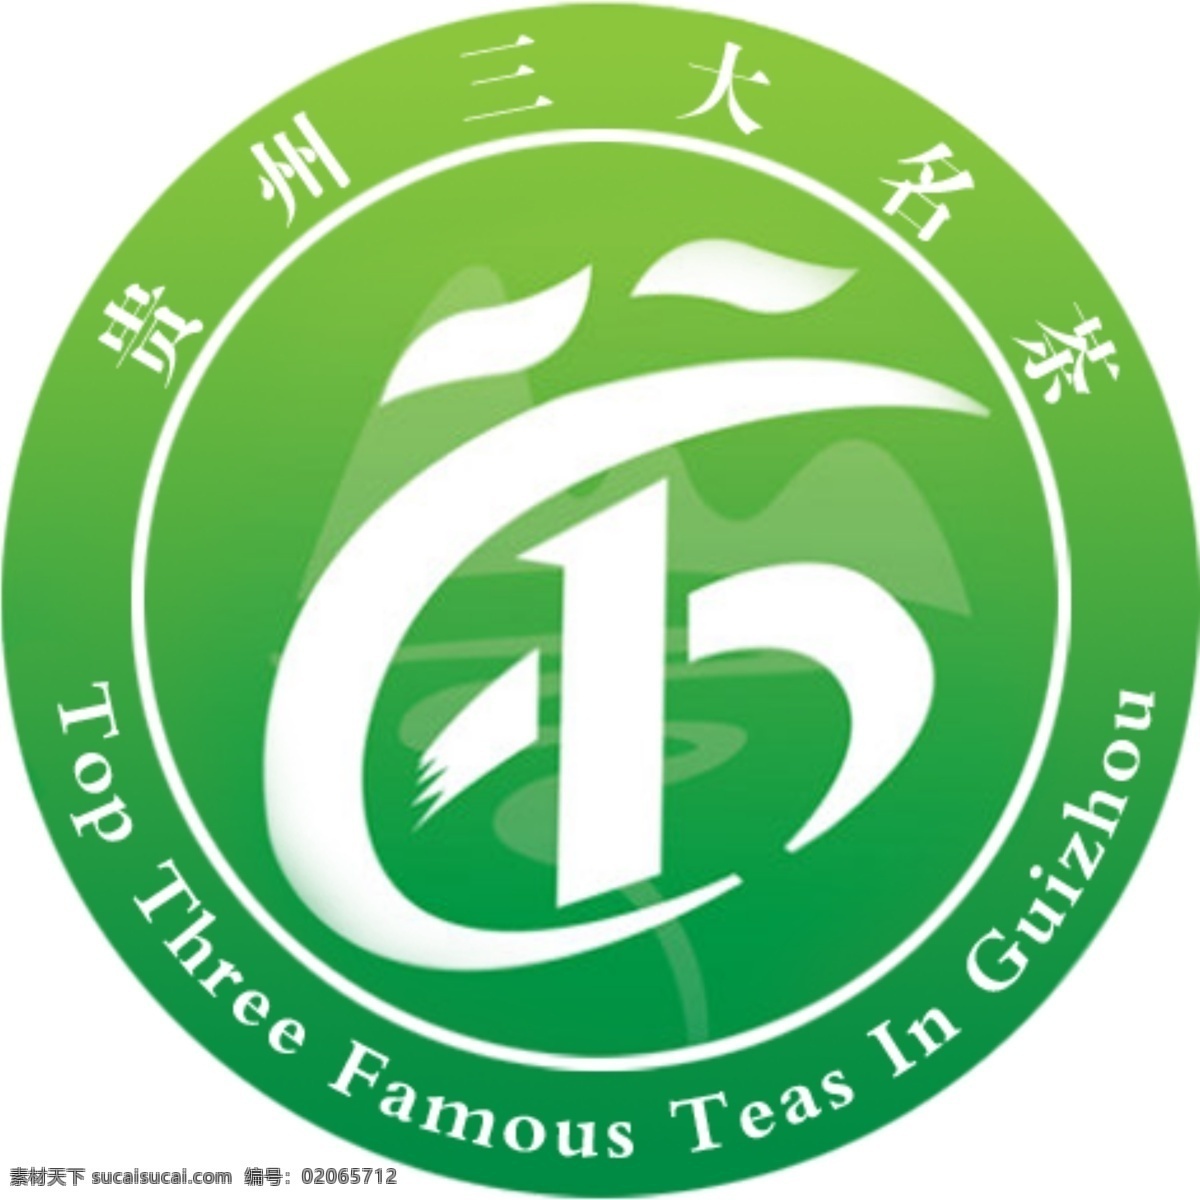 贵州 三大 名茶 标志 贵州三大名茶 贵州名茶 绿色